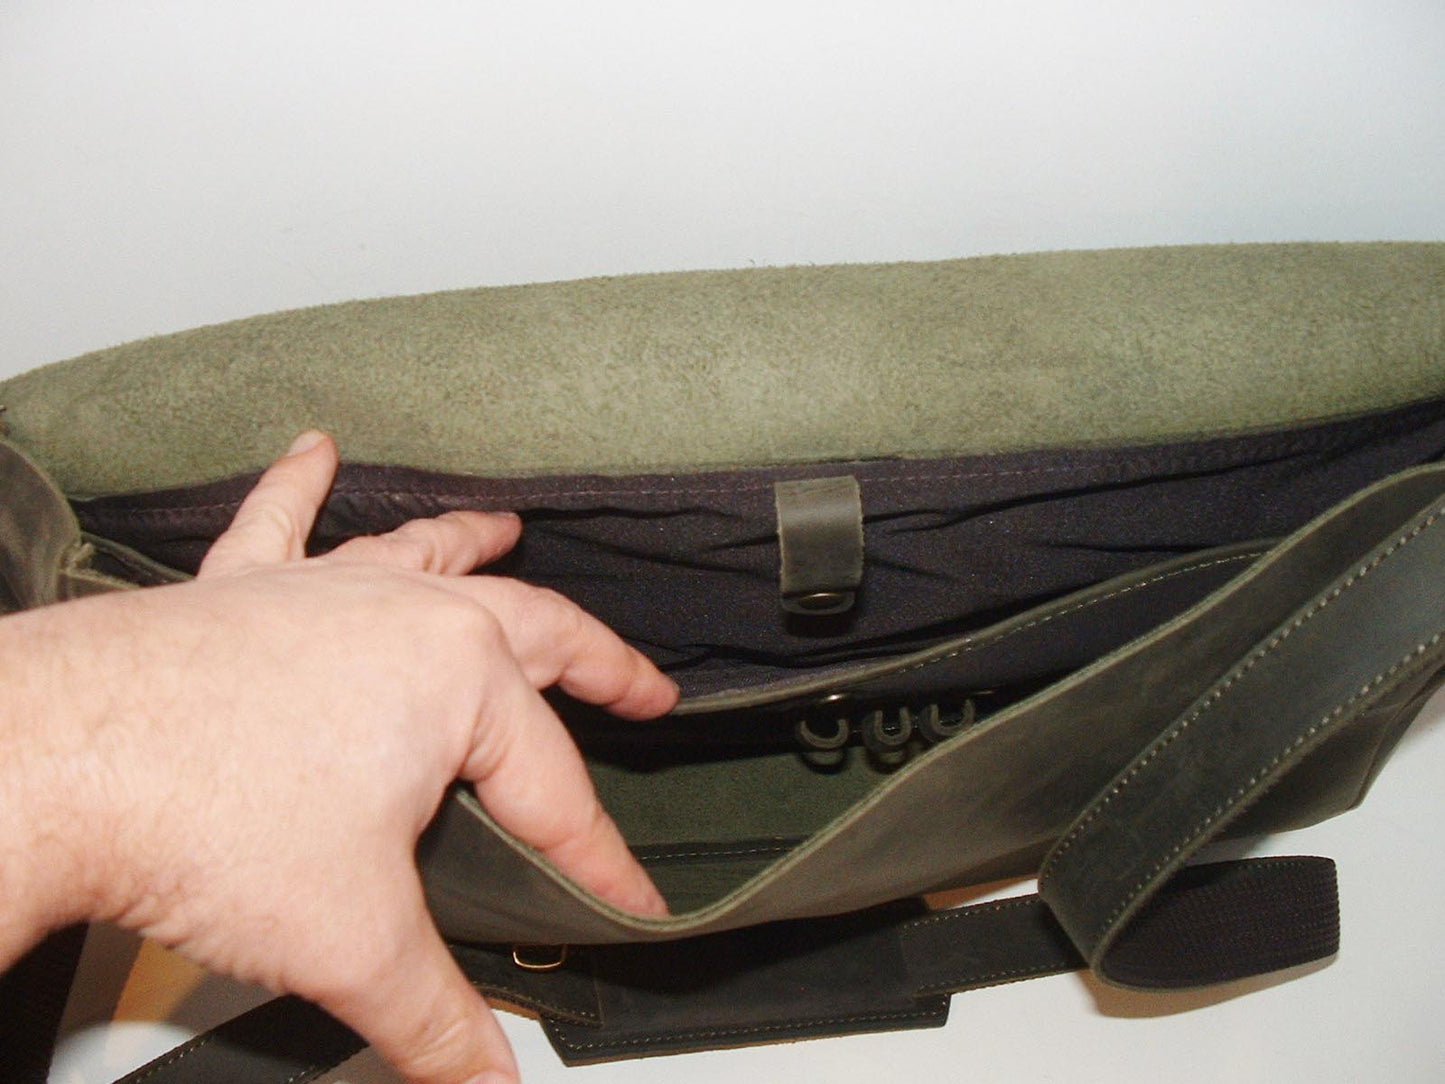 Laptop Leather Shoulder Bag